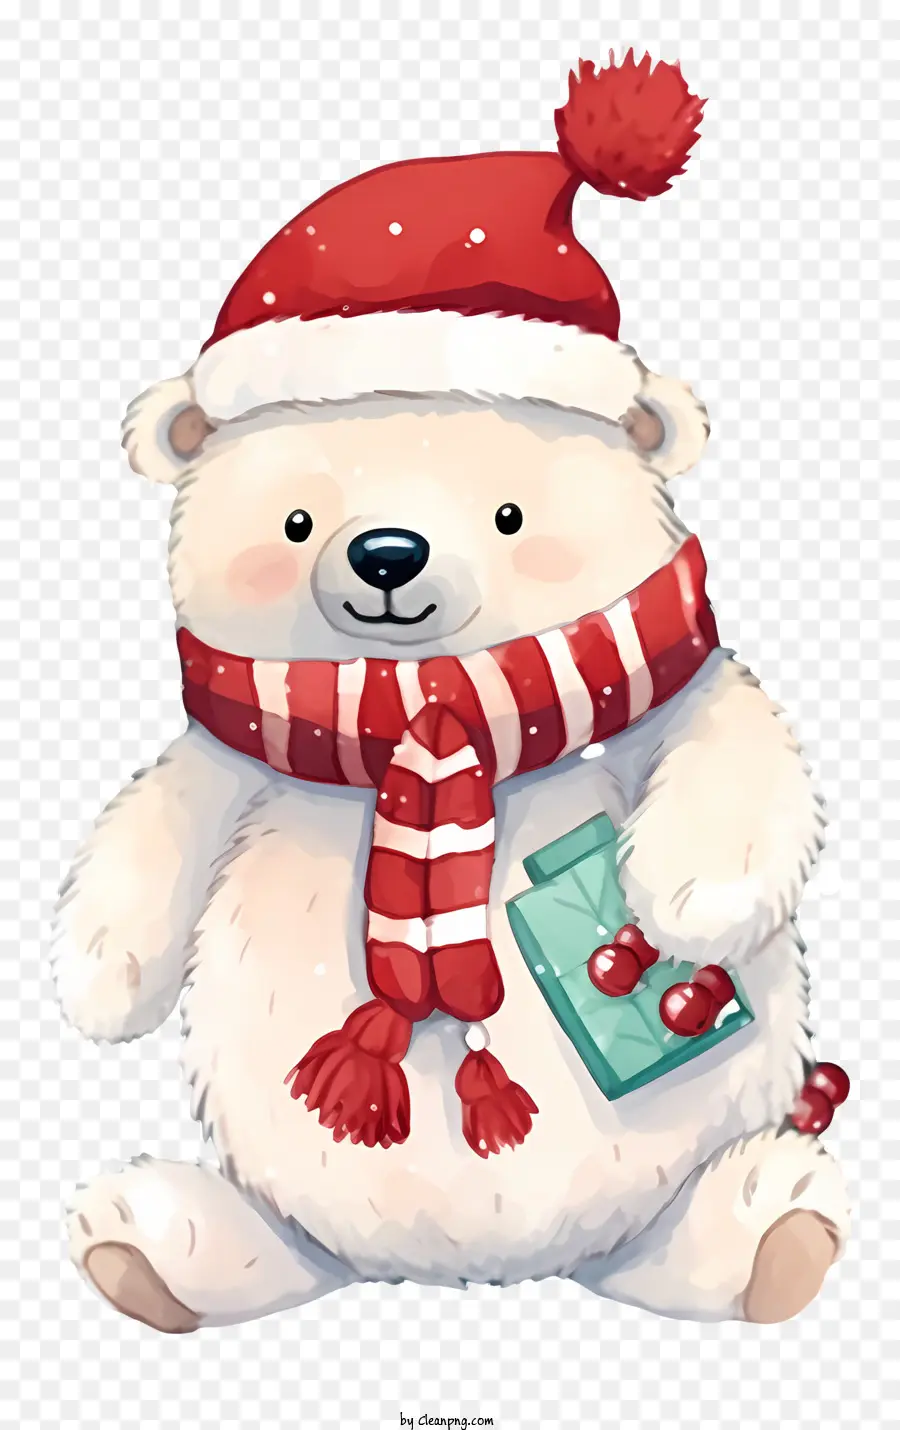 Gấu Bắc Cực Mũ Sọc Đỏ và Trắng Mũ Sọc Đỏ và Trắng Mũ Sọc Đỏ và Trắng - Gấu Bắc cực lễ hội với các phụ kiện màu đỏ và trắng